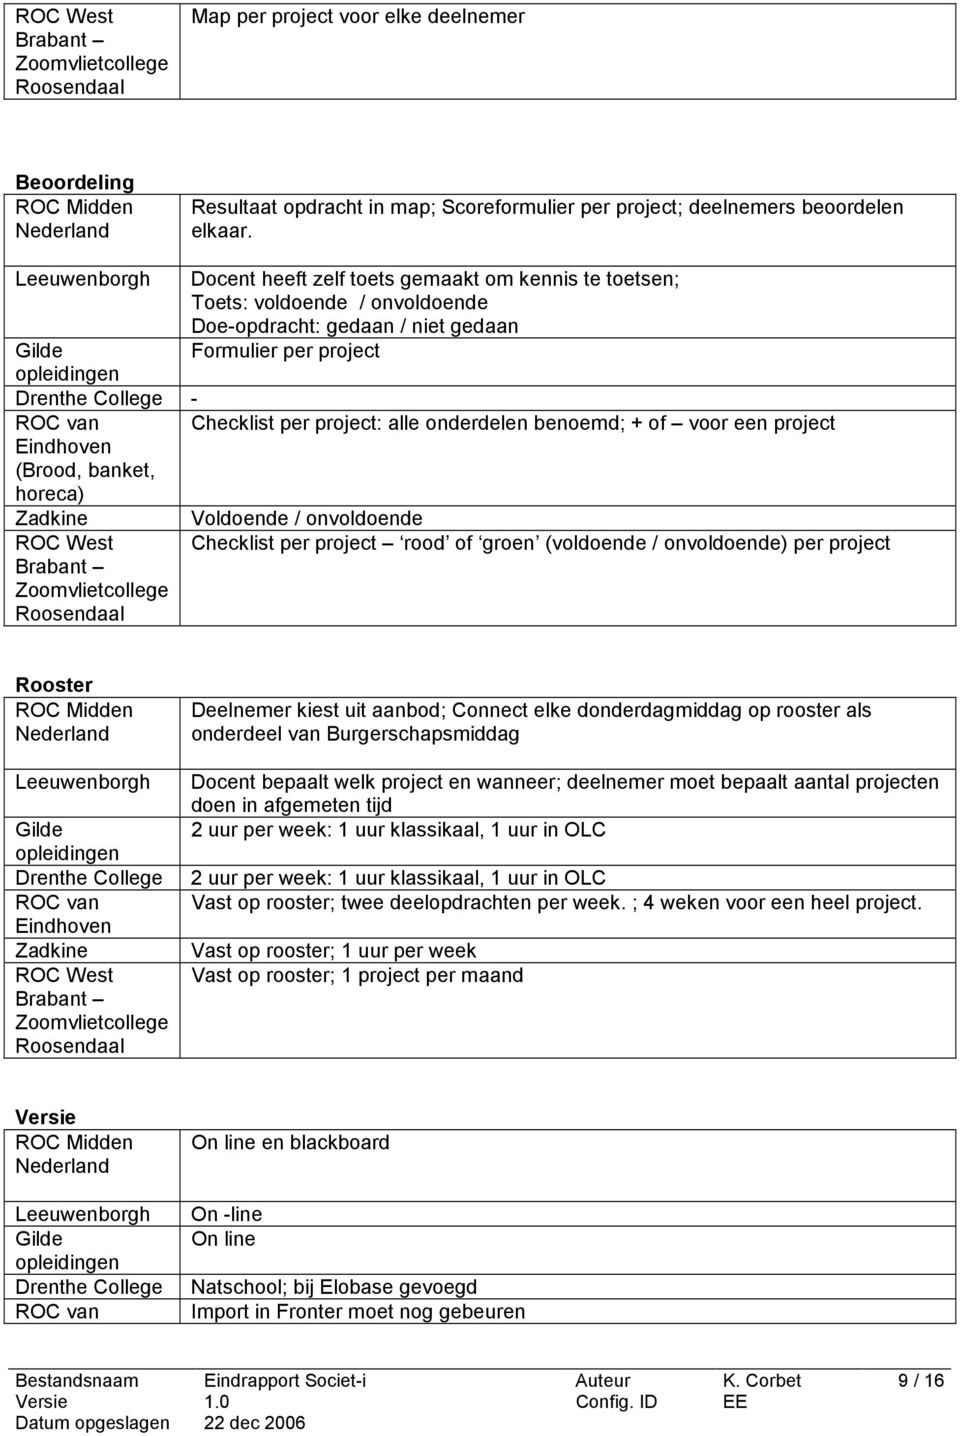 Checklist per project: alle onderdelen benoemd; + of voor een project Eindhoven (Brood, banket, horeca) Zadkine ROC West Brabant Zoomvlietcollege Roosendaal Voldoende / onvoldoende Checklist per